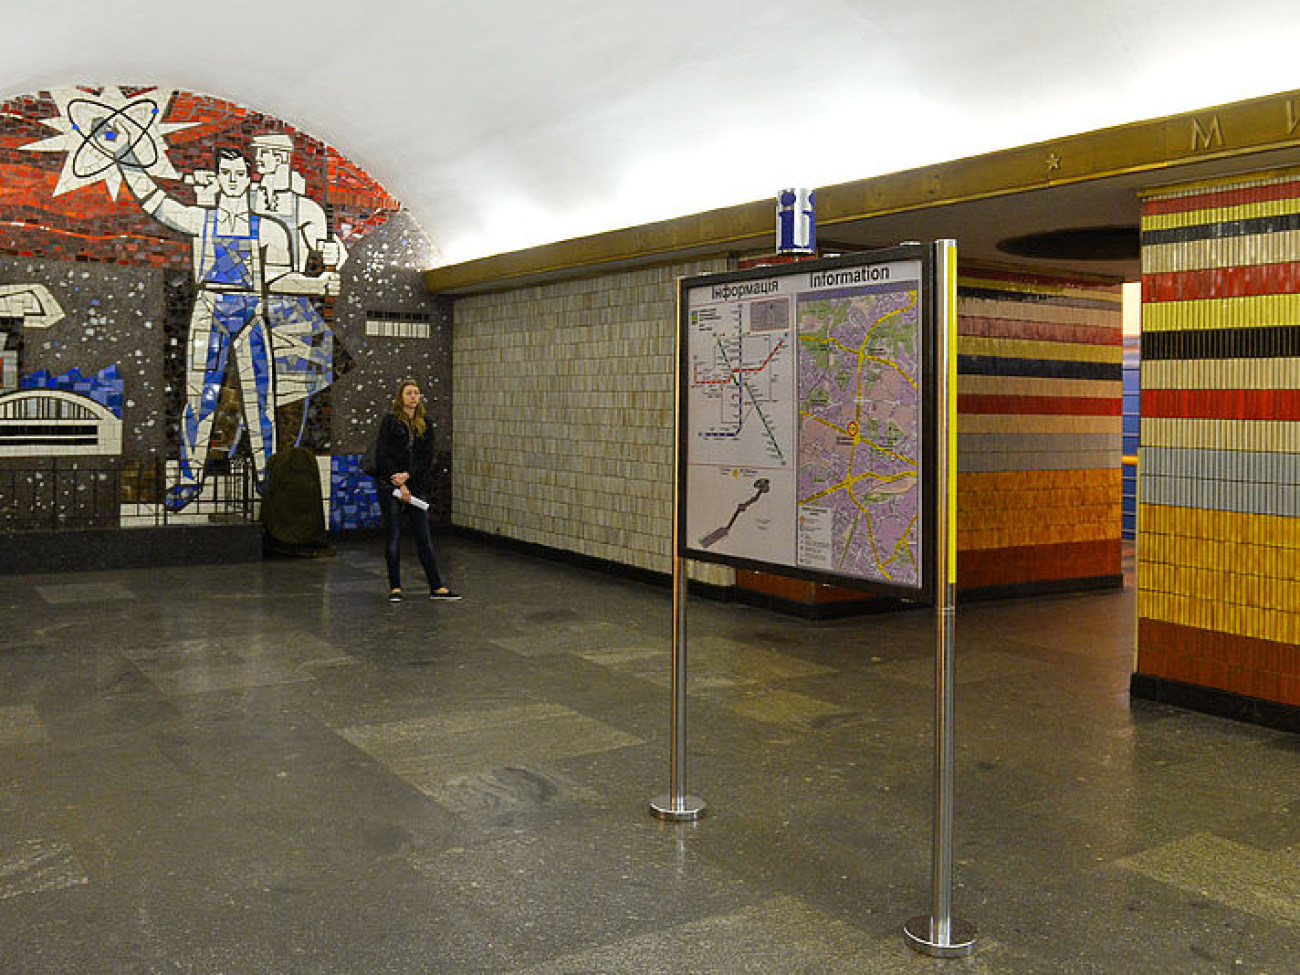 Киевское метро лишится не только звезд, но и &#171;Мира&#187;, &#171;Равенства&#187;, &#171;Братства&#187;, 18 мая 2015 г.